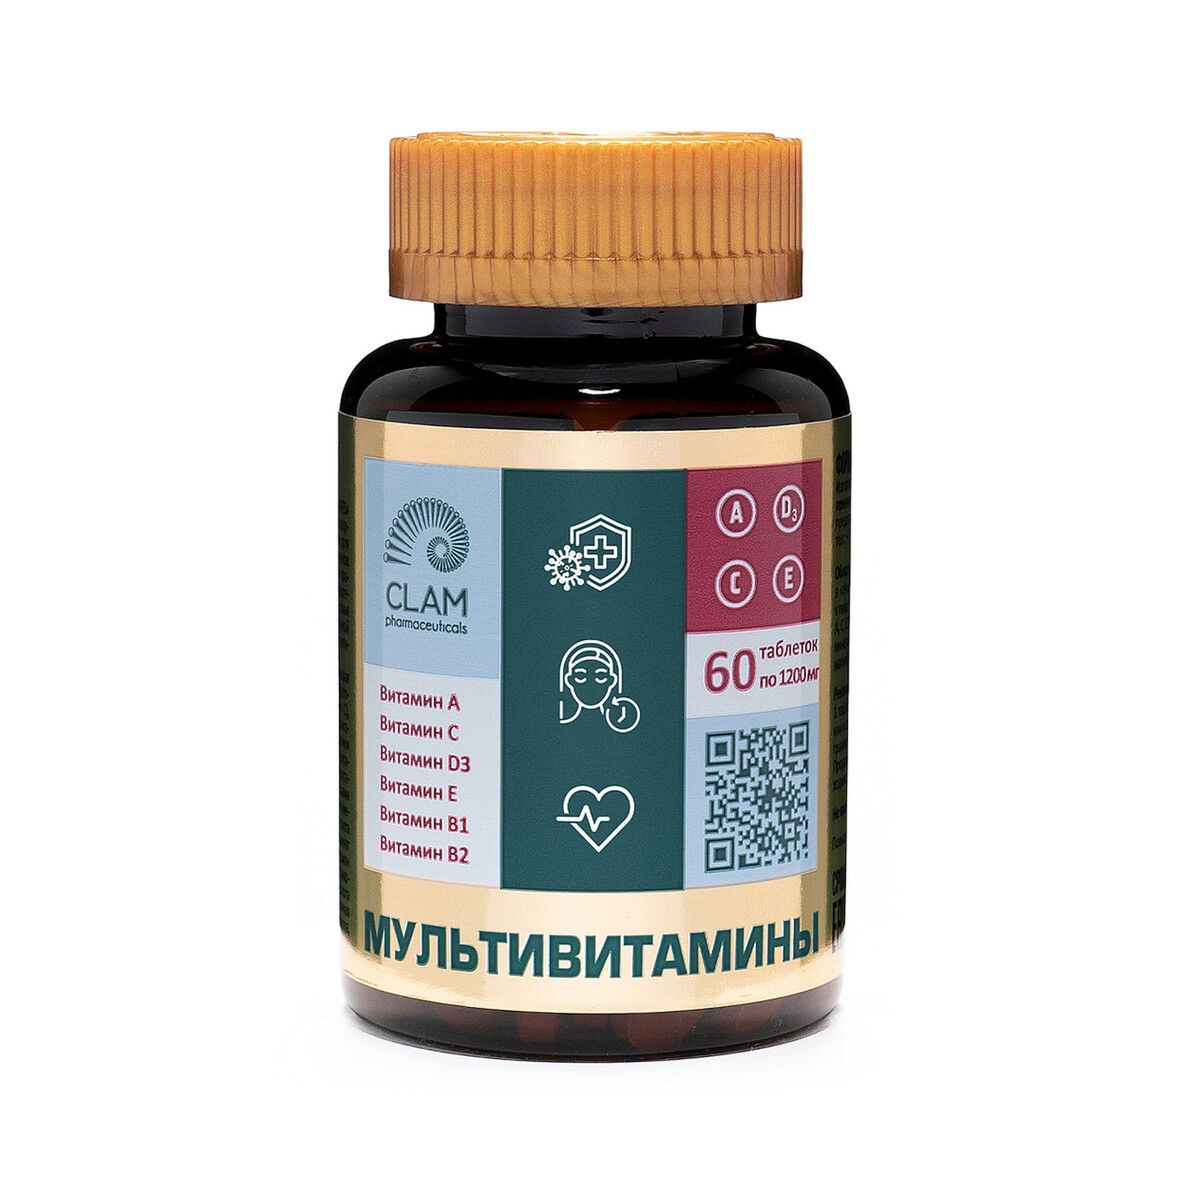 Мультивитамины - anti age, источник витаминов и минералов - комплекс для иммунитета, молодости и красоты - 60 капсул nutriheal цинк цинк пиколинат цинк витамины с шиповник 60 табл